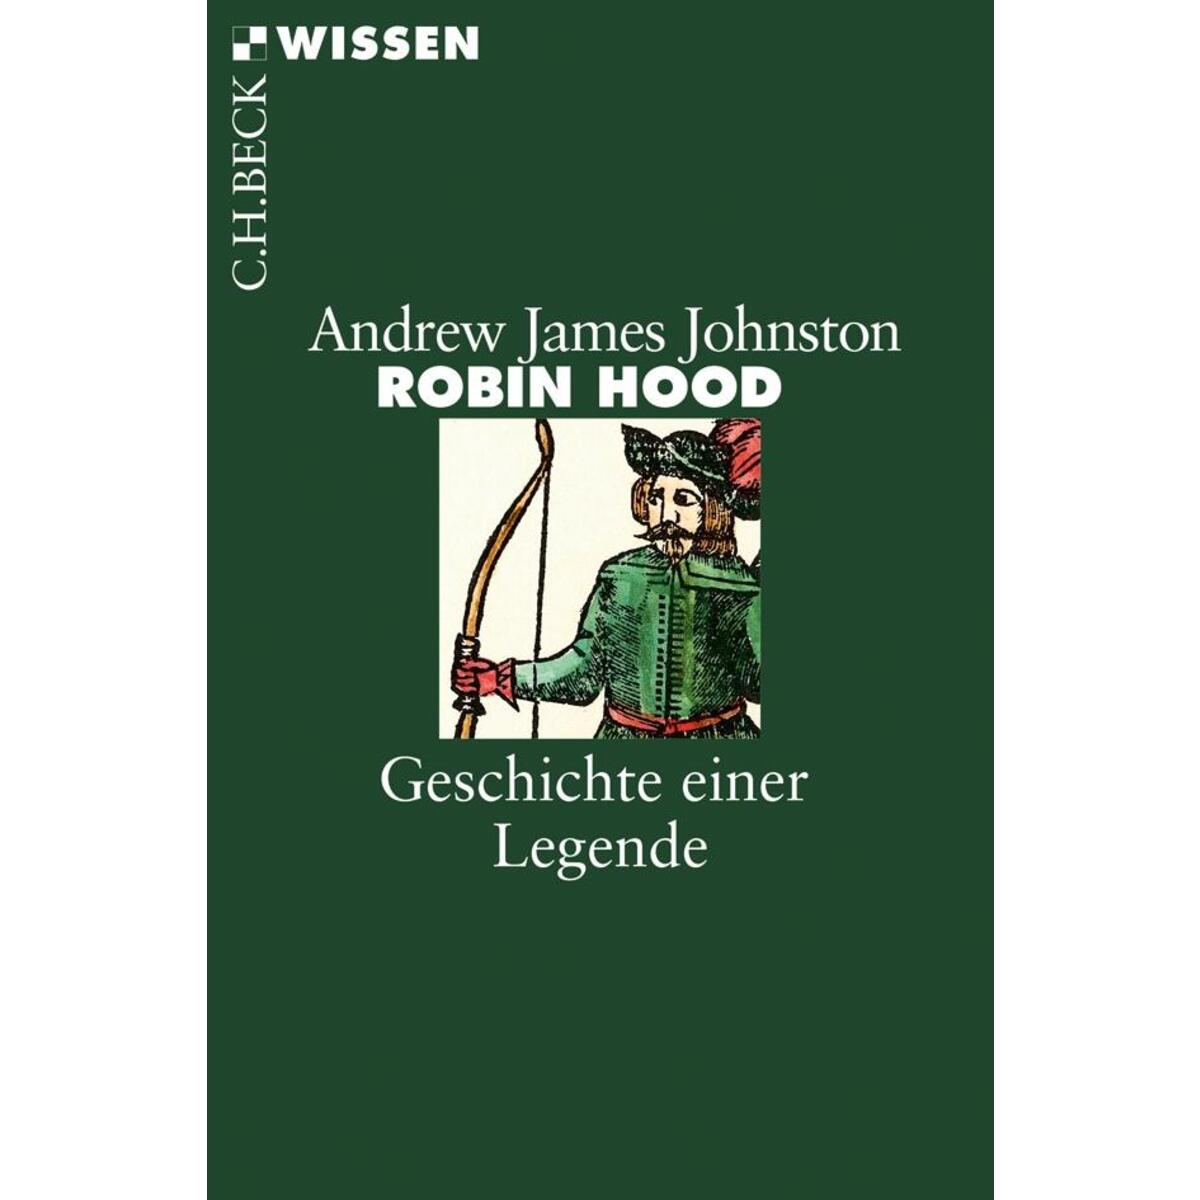 Robin Hood von C.H. Beck